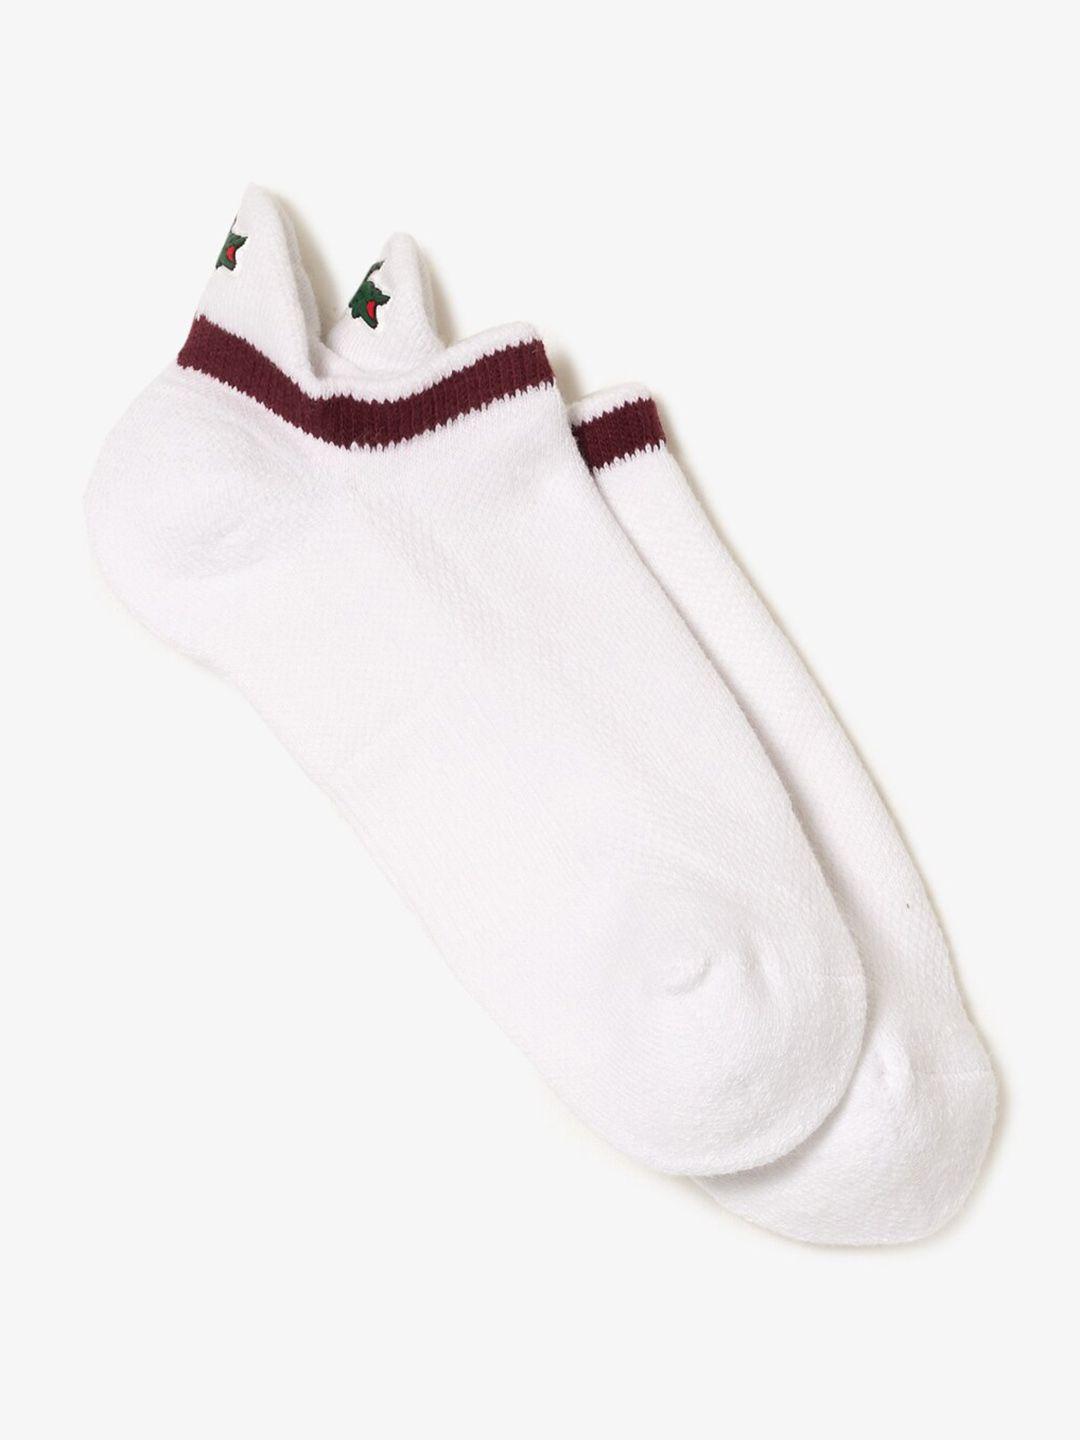 lacoste-men-sport-breathable-ankle-length-socks